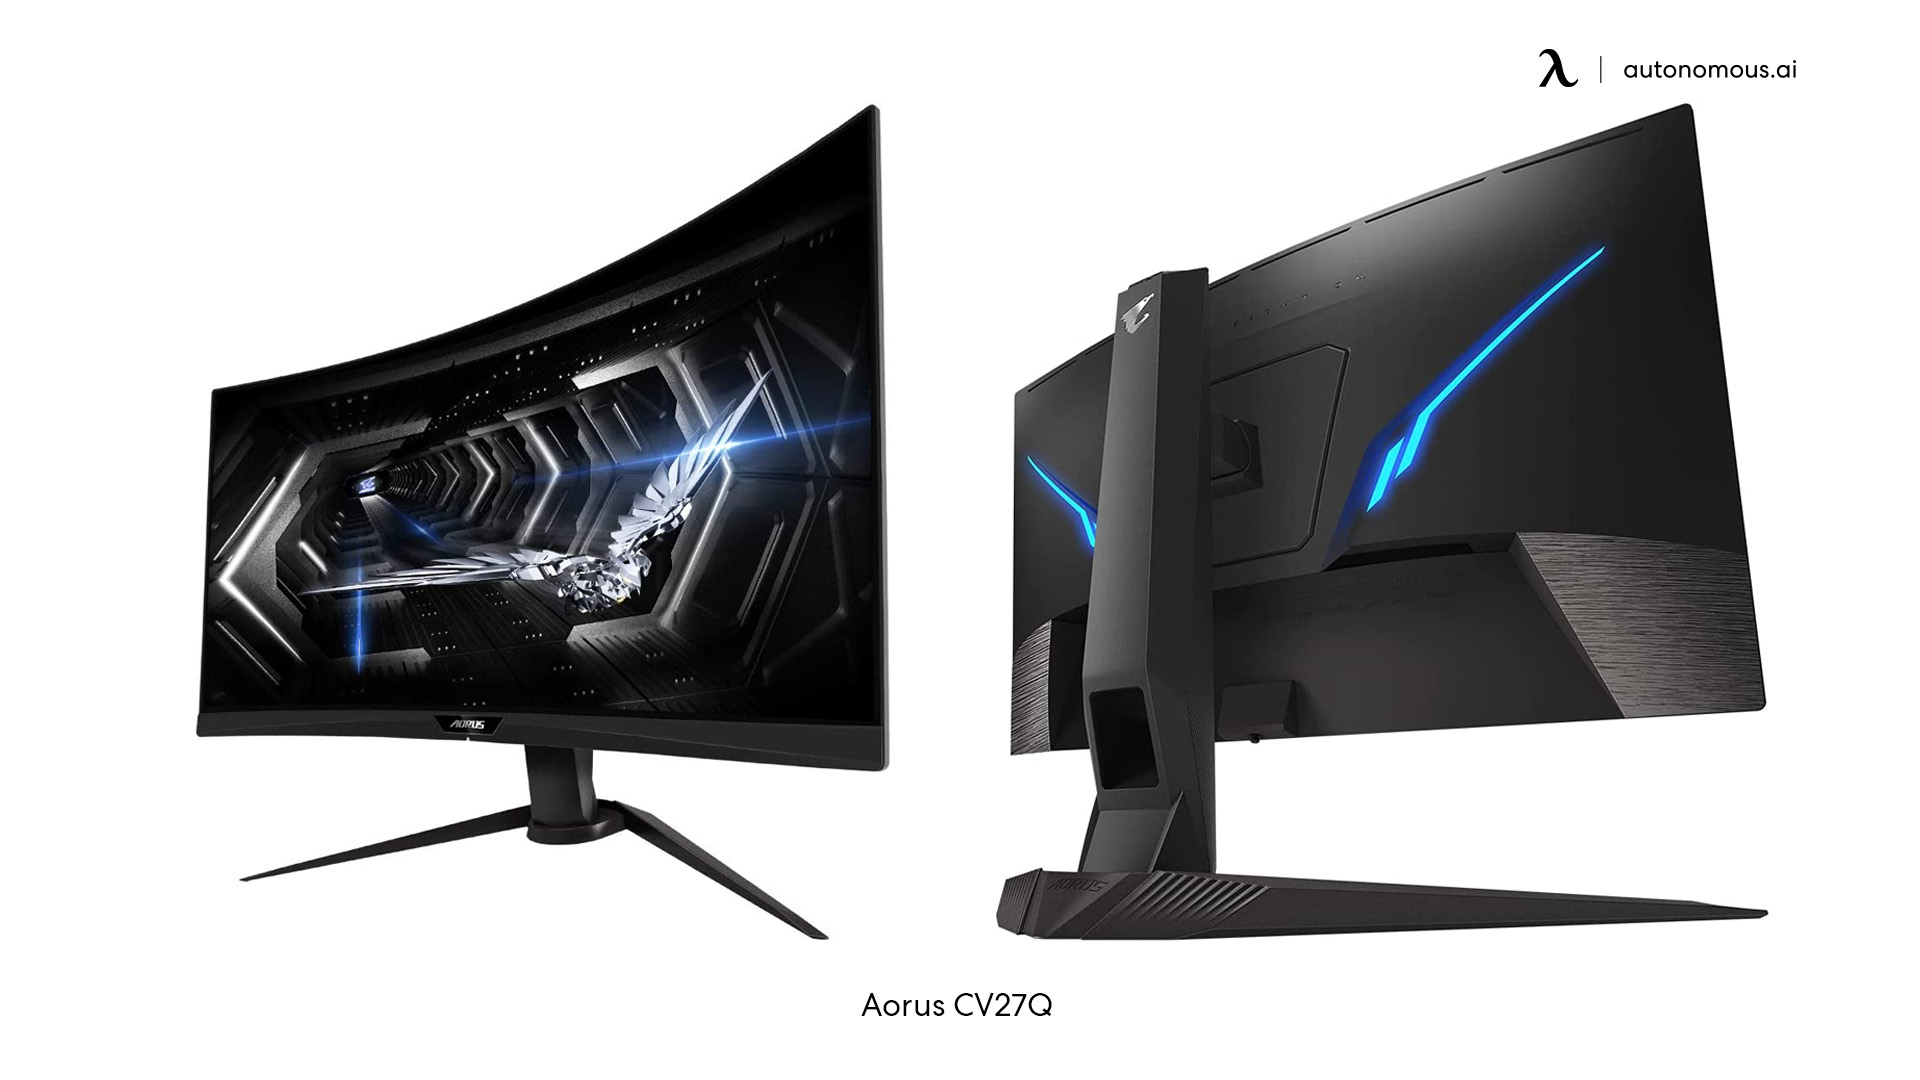 Aorus CV27Q 27-inch gaming monitor